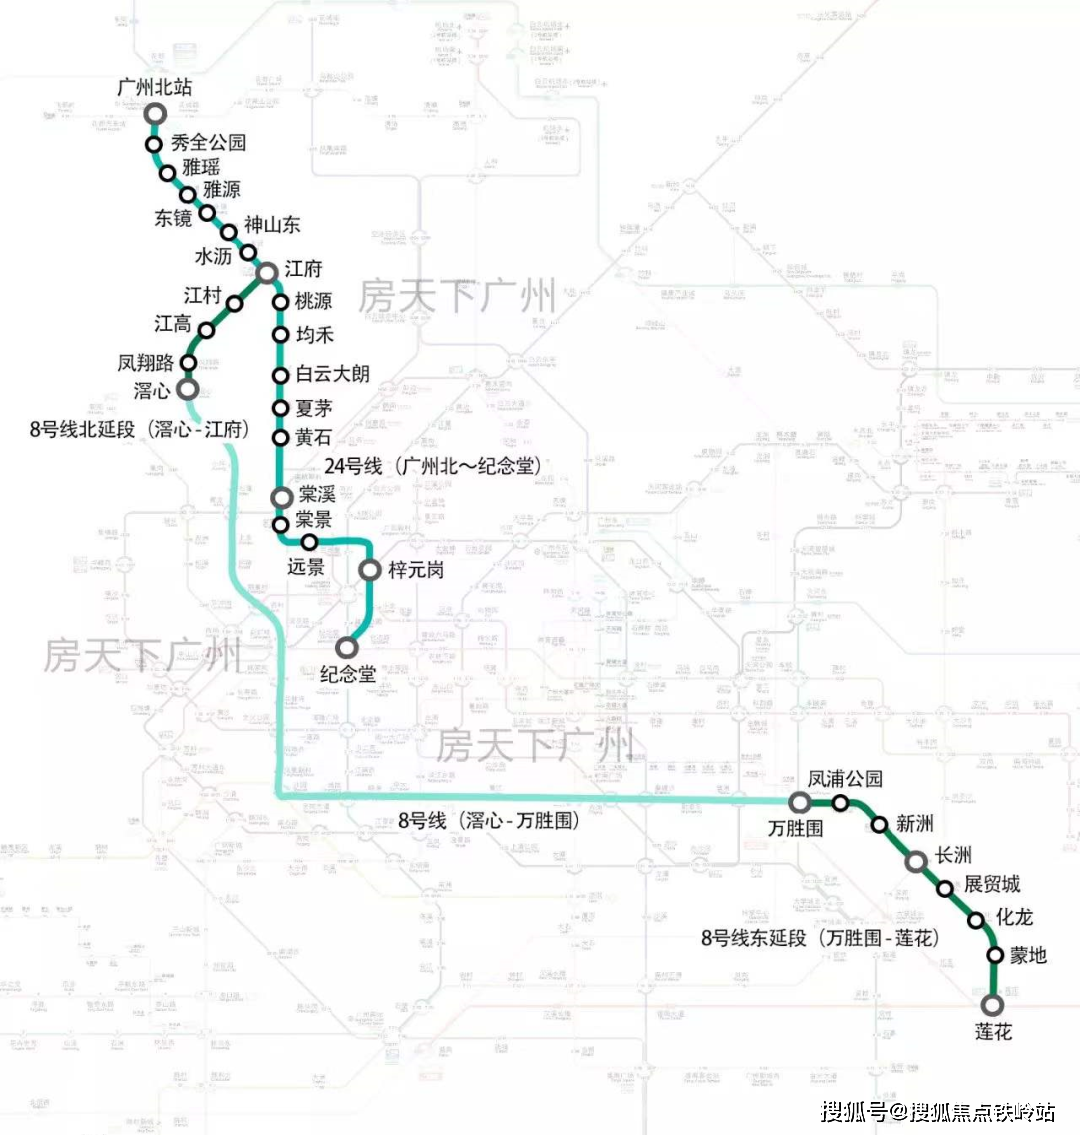 地铁24号线(规划中,从白云湖至广州北站)约10分钟即可到达广州北站